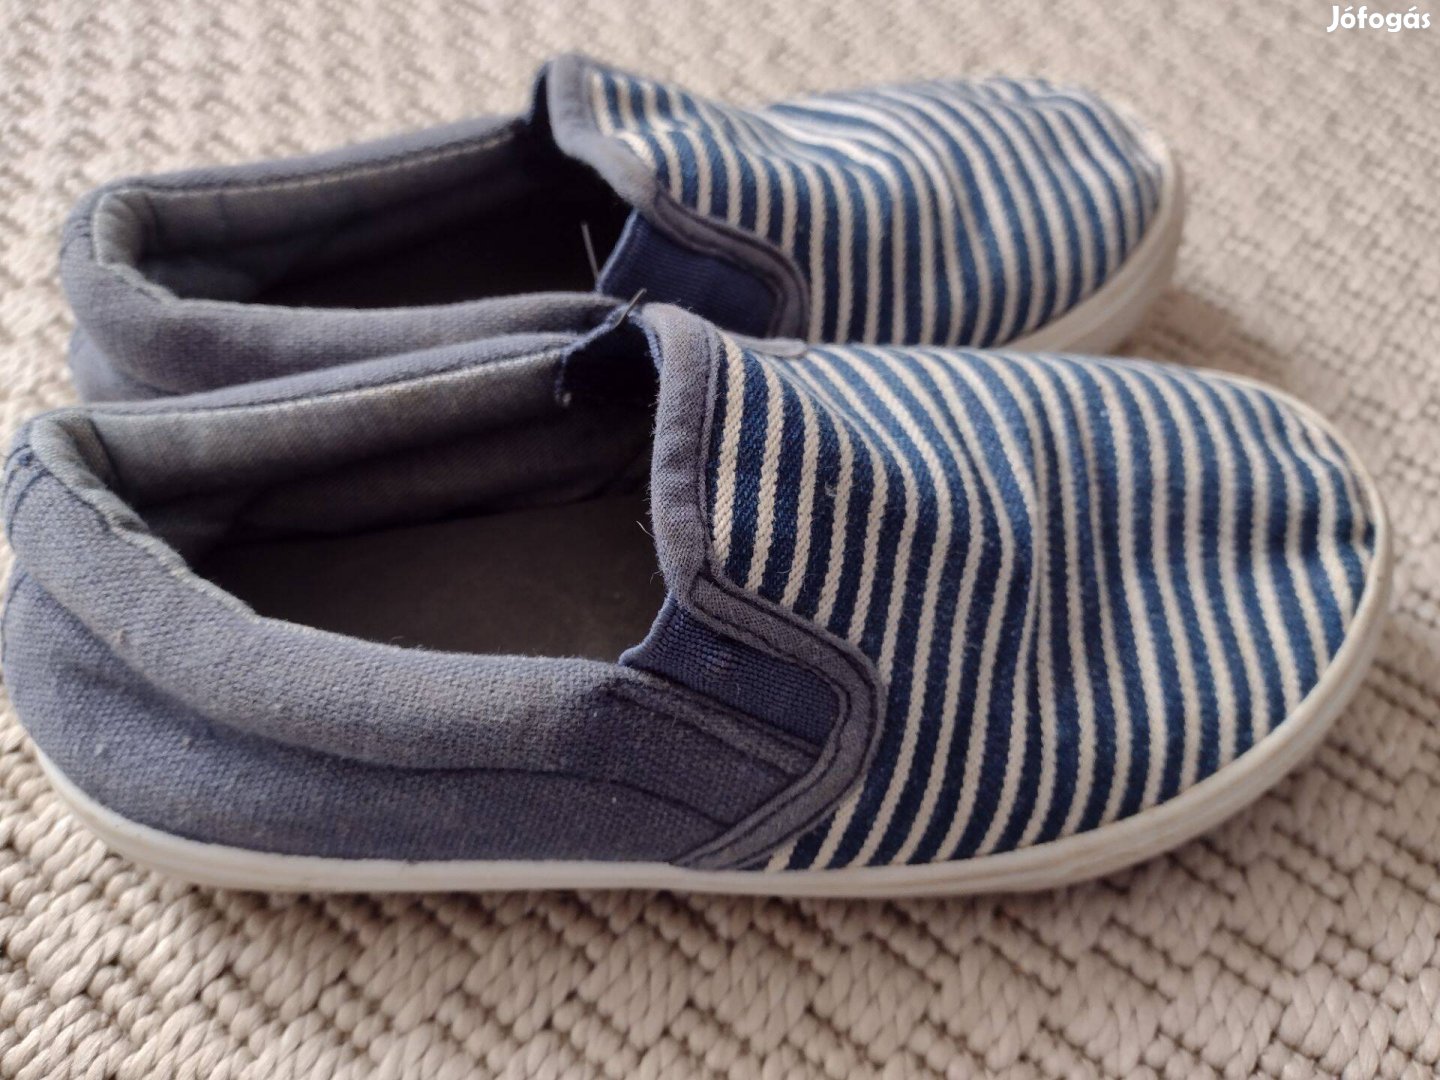 29-es kék-fehér csíkos vászon tornacipő